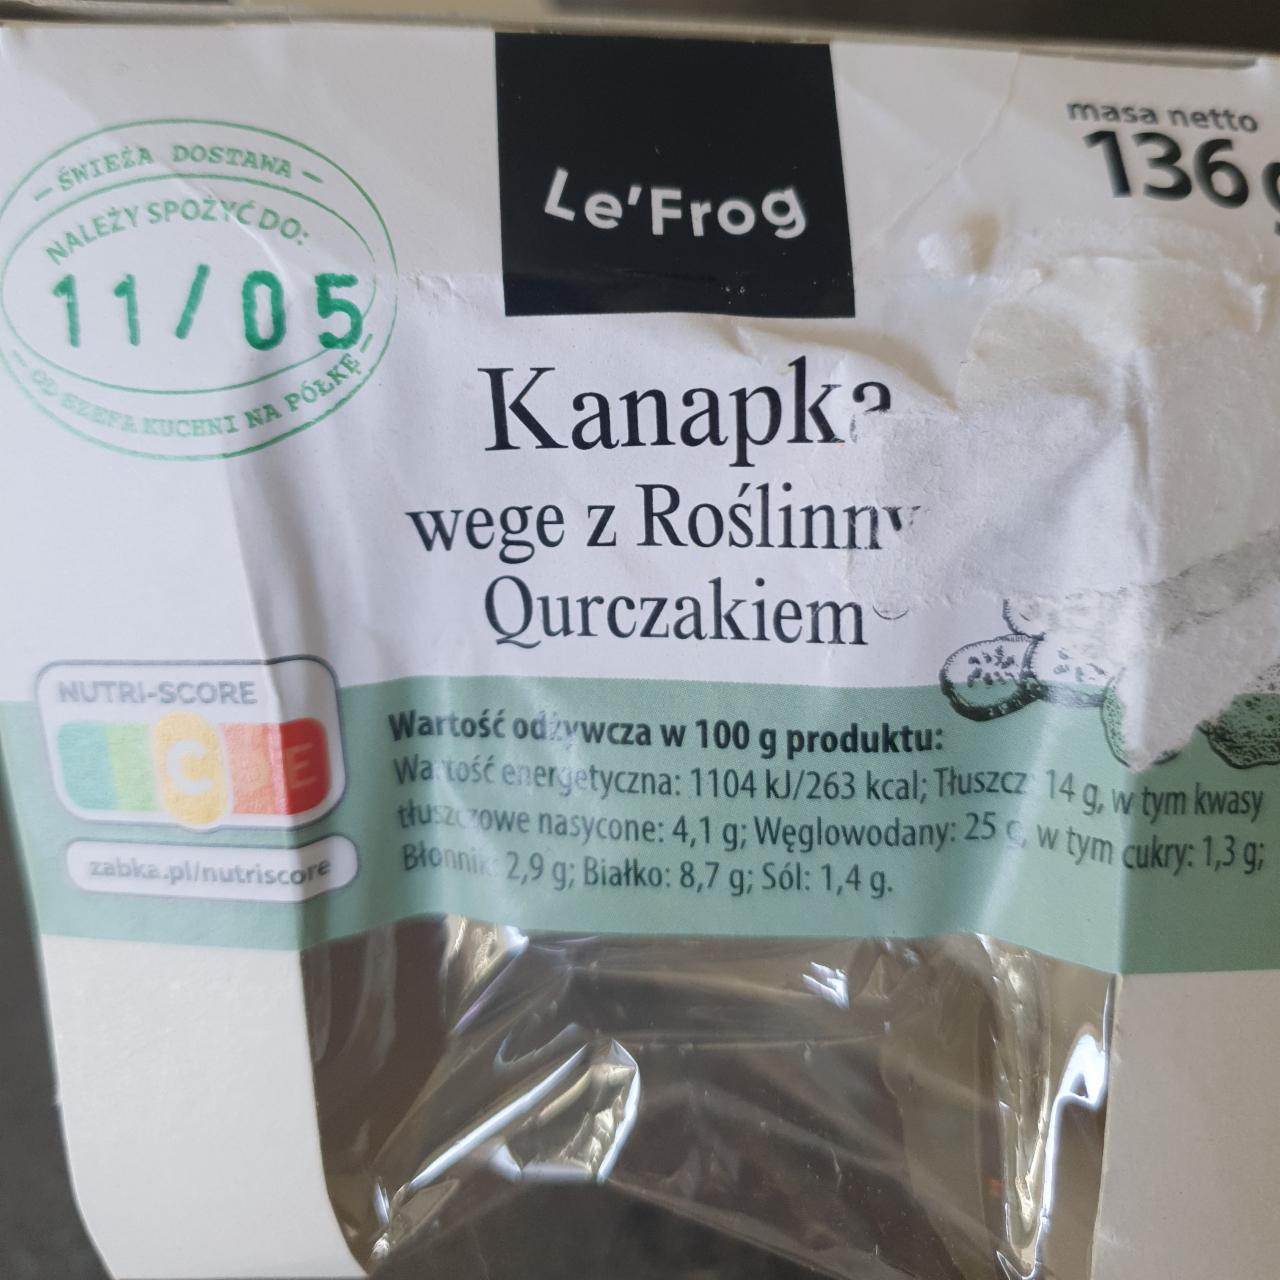 Zdjęcia - Kanapka wege z Roślinnym Qurczakiem Le'frog